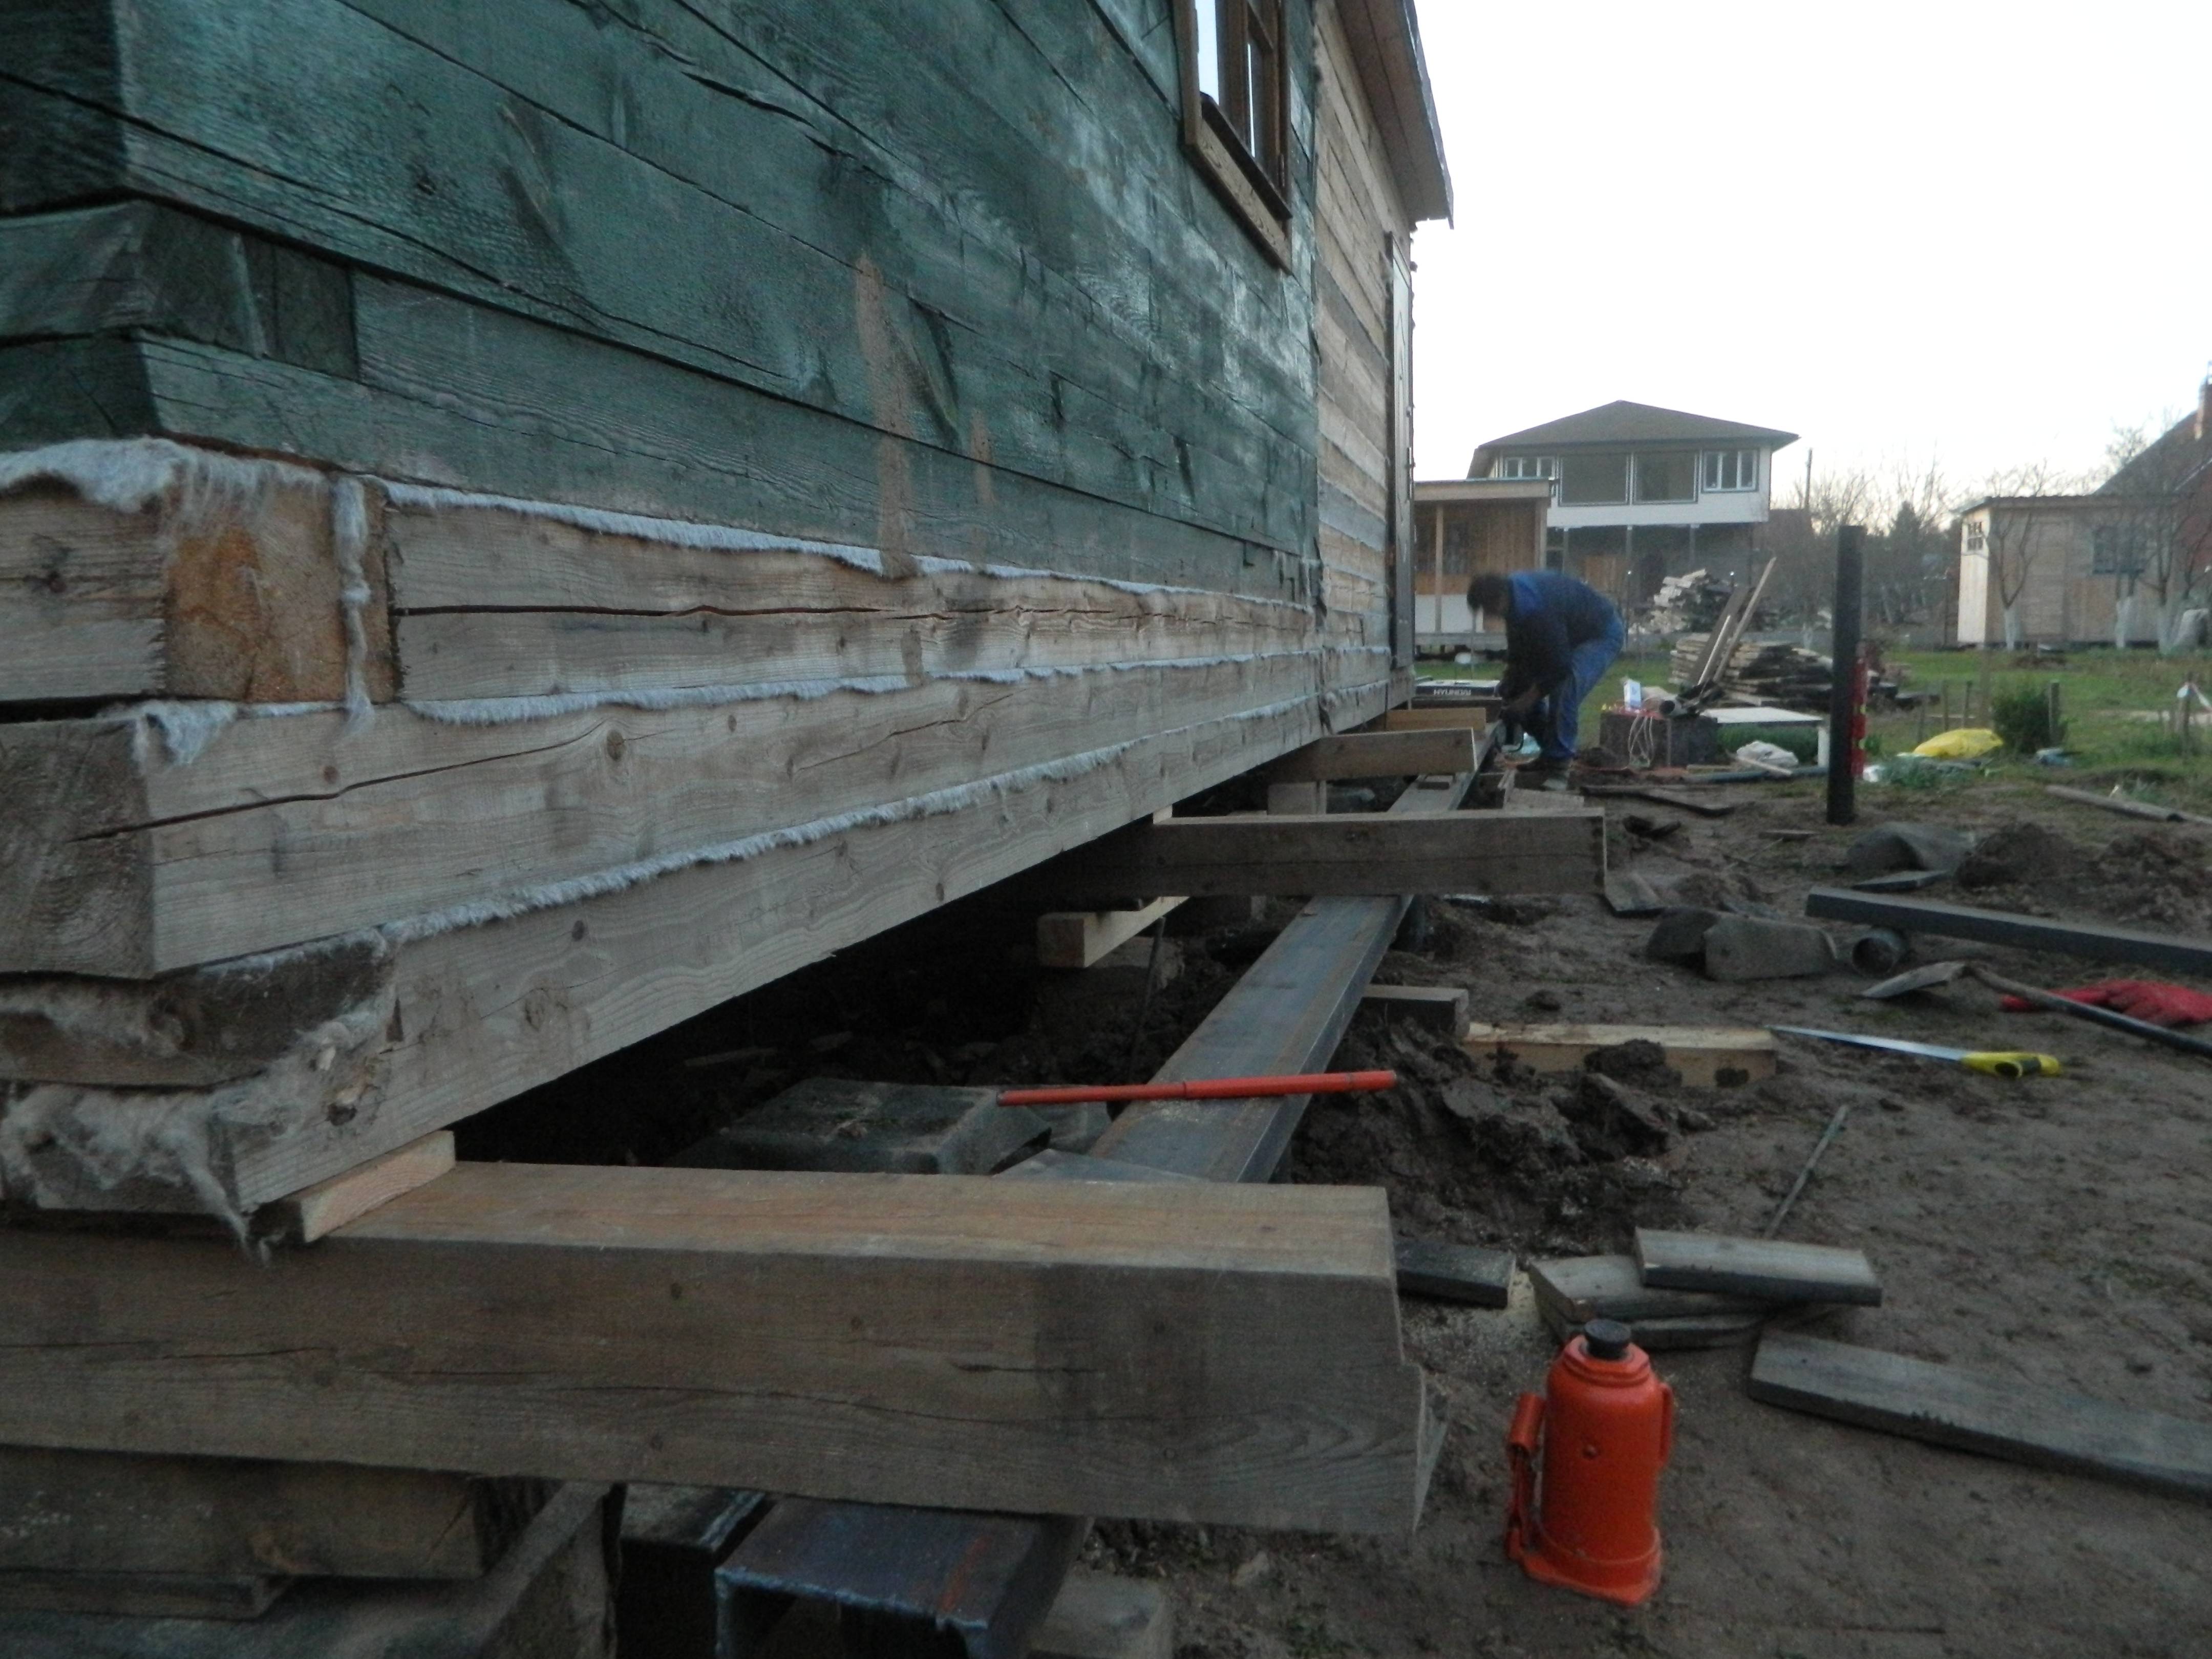 Фундамент под старый деревянный дом: укрепление, работа с венцом, инструкция по ремонту, методы и коррекция